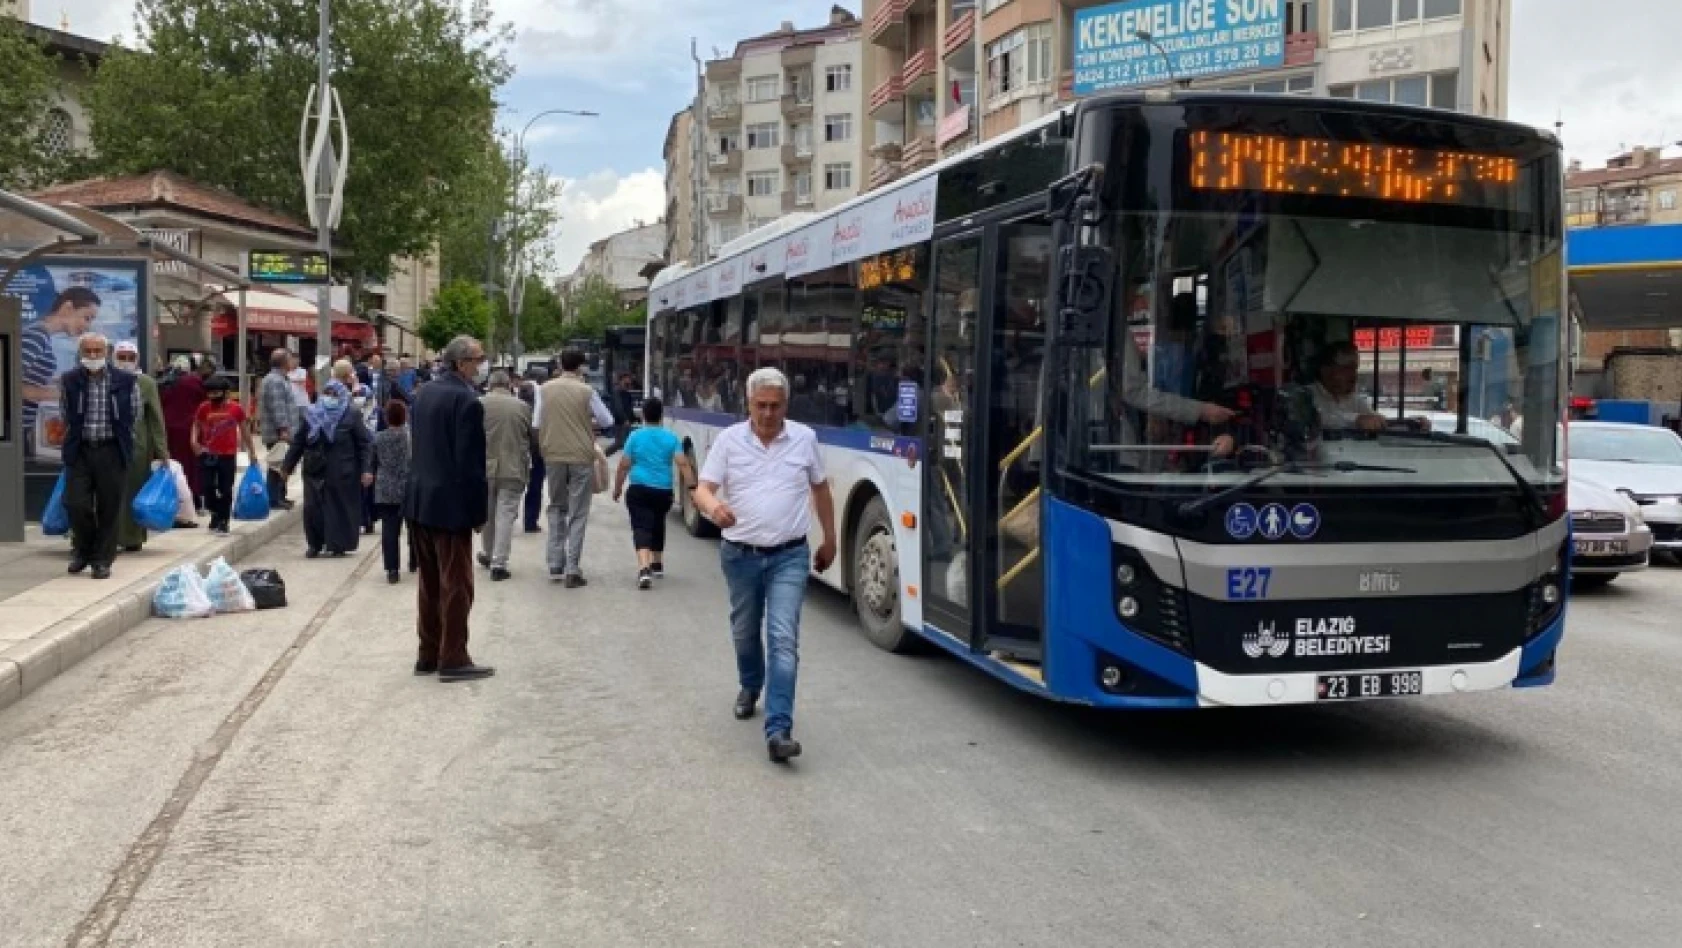 Elazığ'da Belediye otobüsleri bayramda ücretsiz